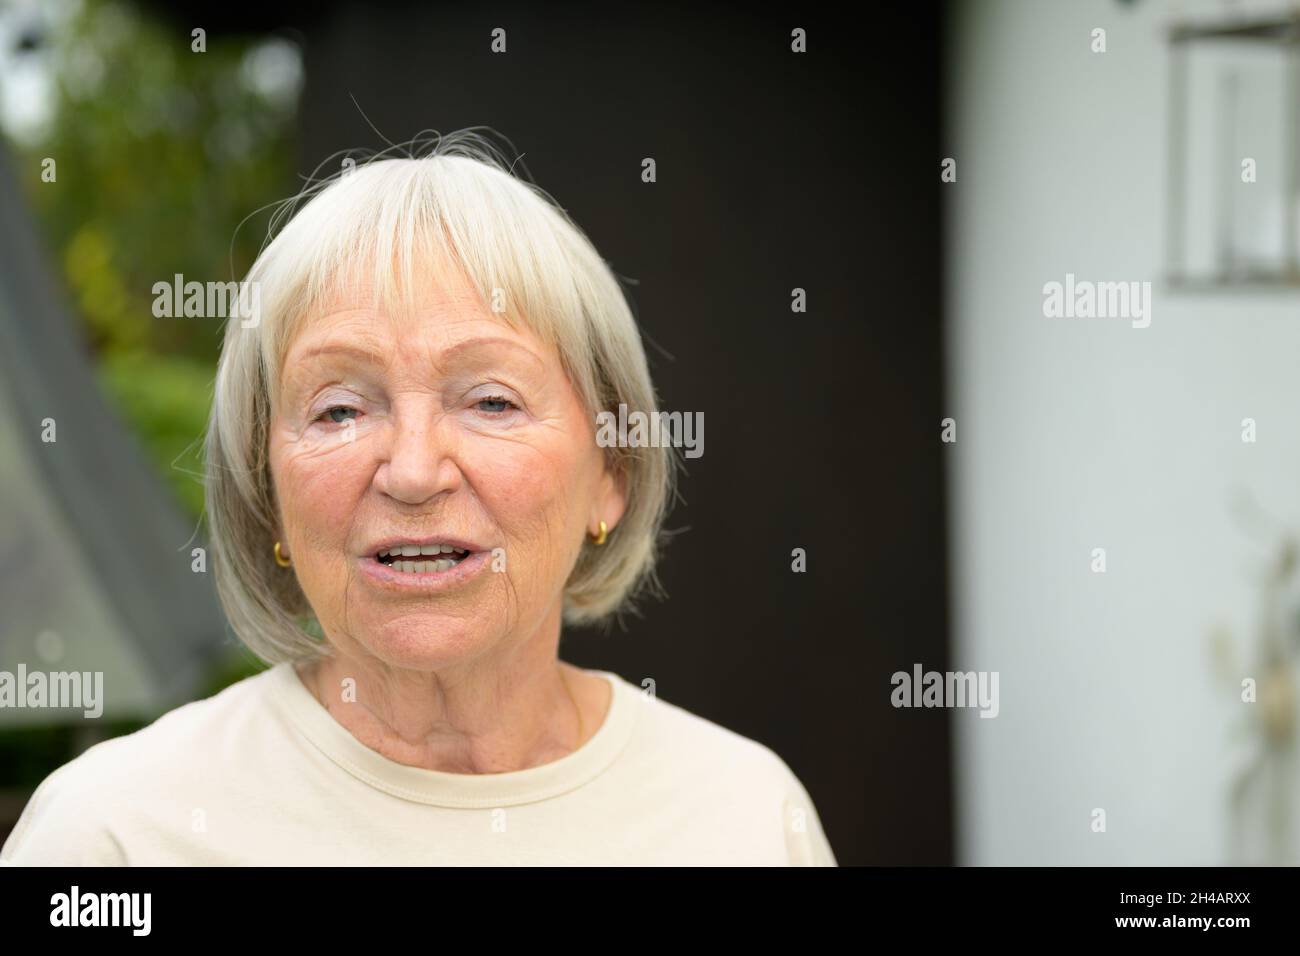 Gesprächige ältere Frau, die sich mit dem Betrachter in einem frontalen Kopf- und Schulterportrait im Freien in einem Park oder Garten unterhalten hat Stockfoto